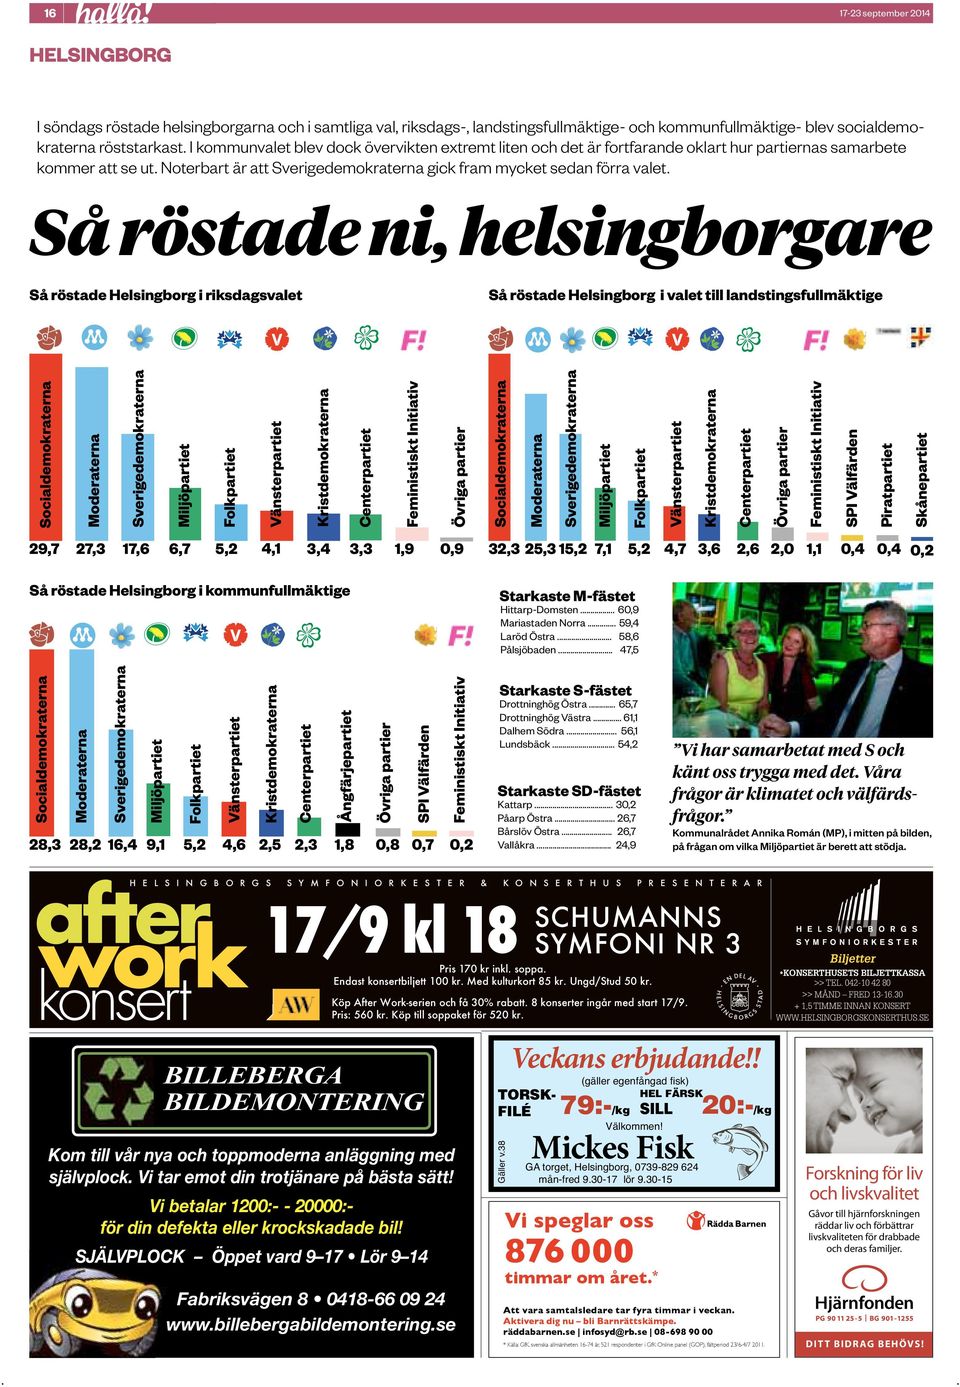 helsingborgare Så röstade Helsingborg i riksdagsvalet Så röstade Helsingborg i valet till landstingsfullmäktige Socialdemokraterna Moderaterna Sverigedemokraterna Miljöpartiet Folkpartiet